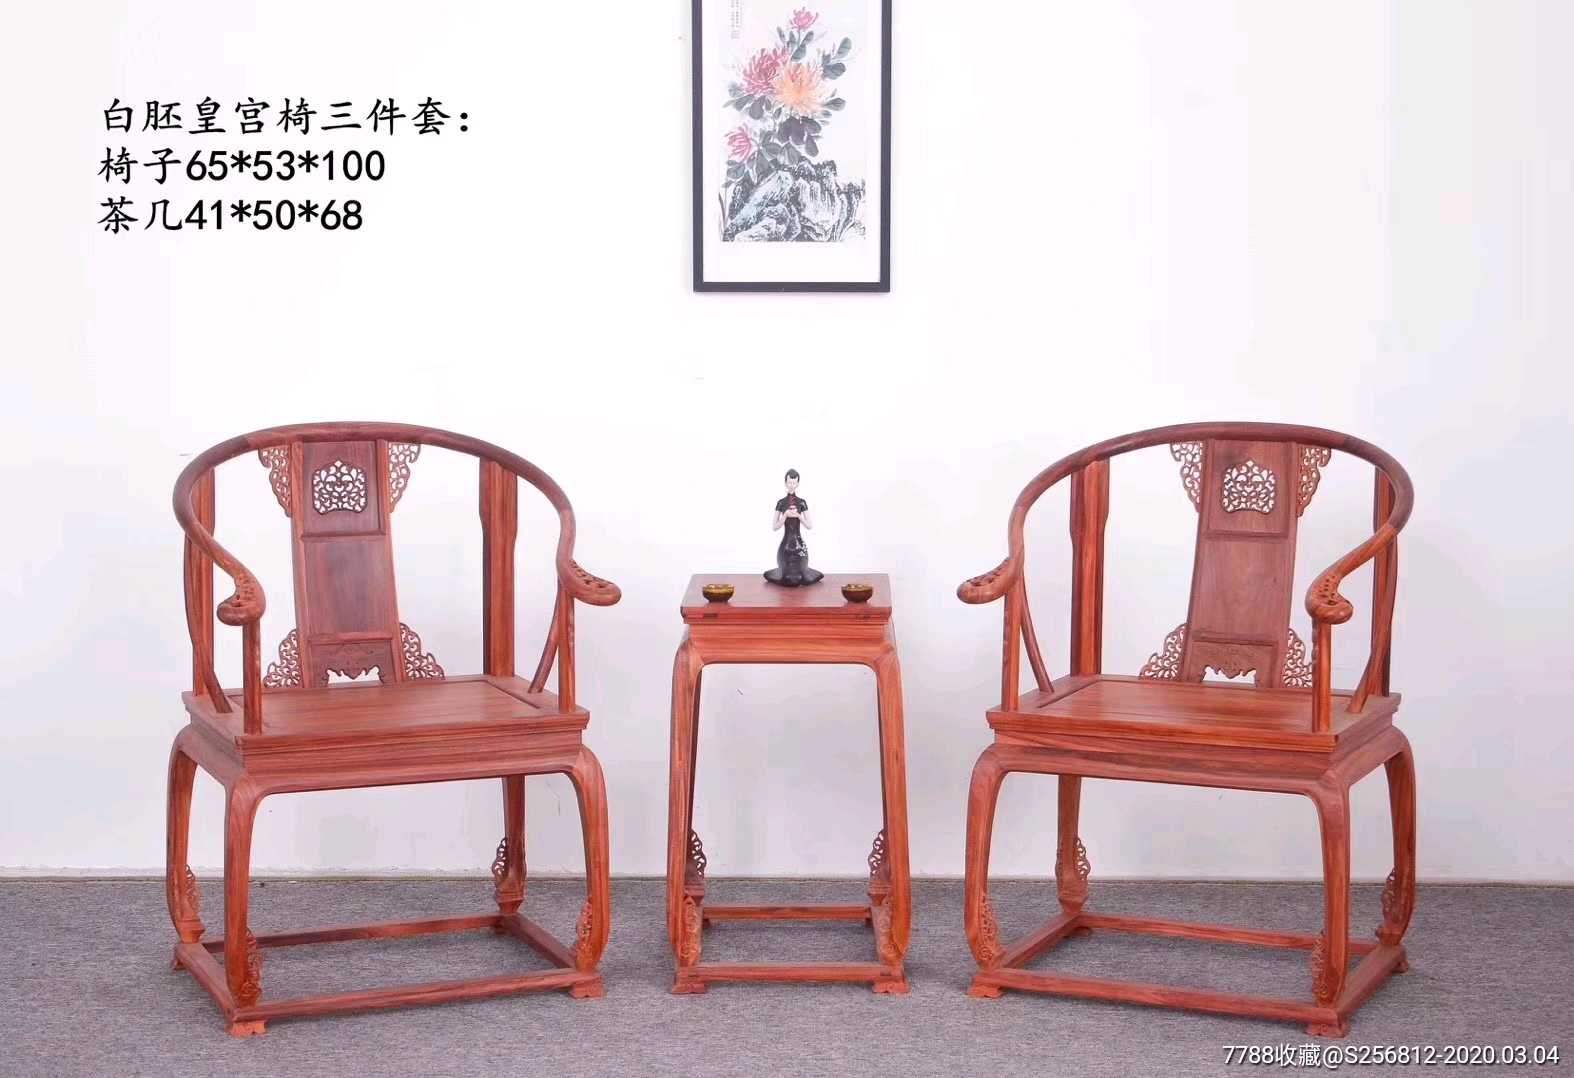 新一批皇宫椅出厂,全榫卯结构,脚花一体【品名】白胚皇宫椅三件套